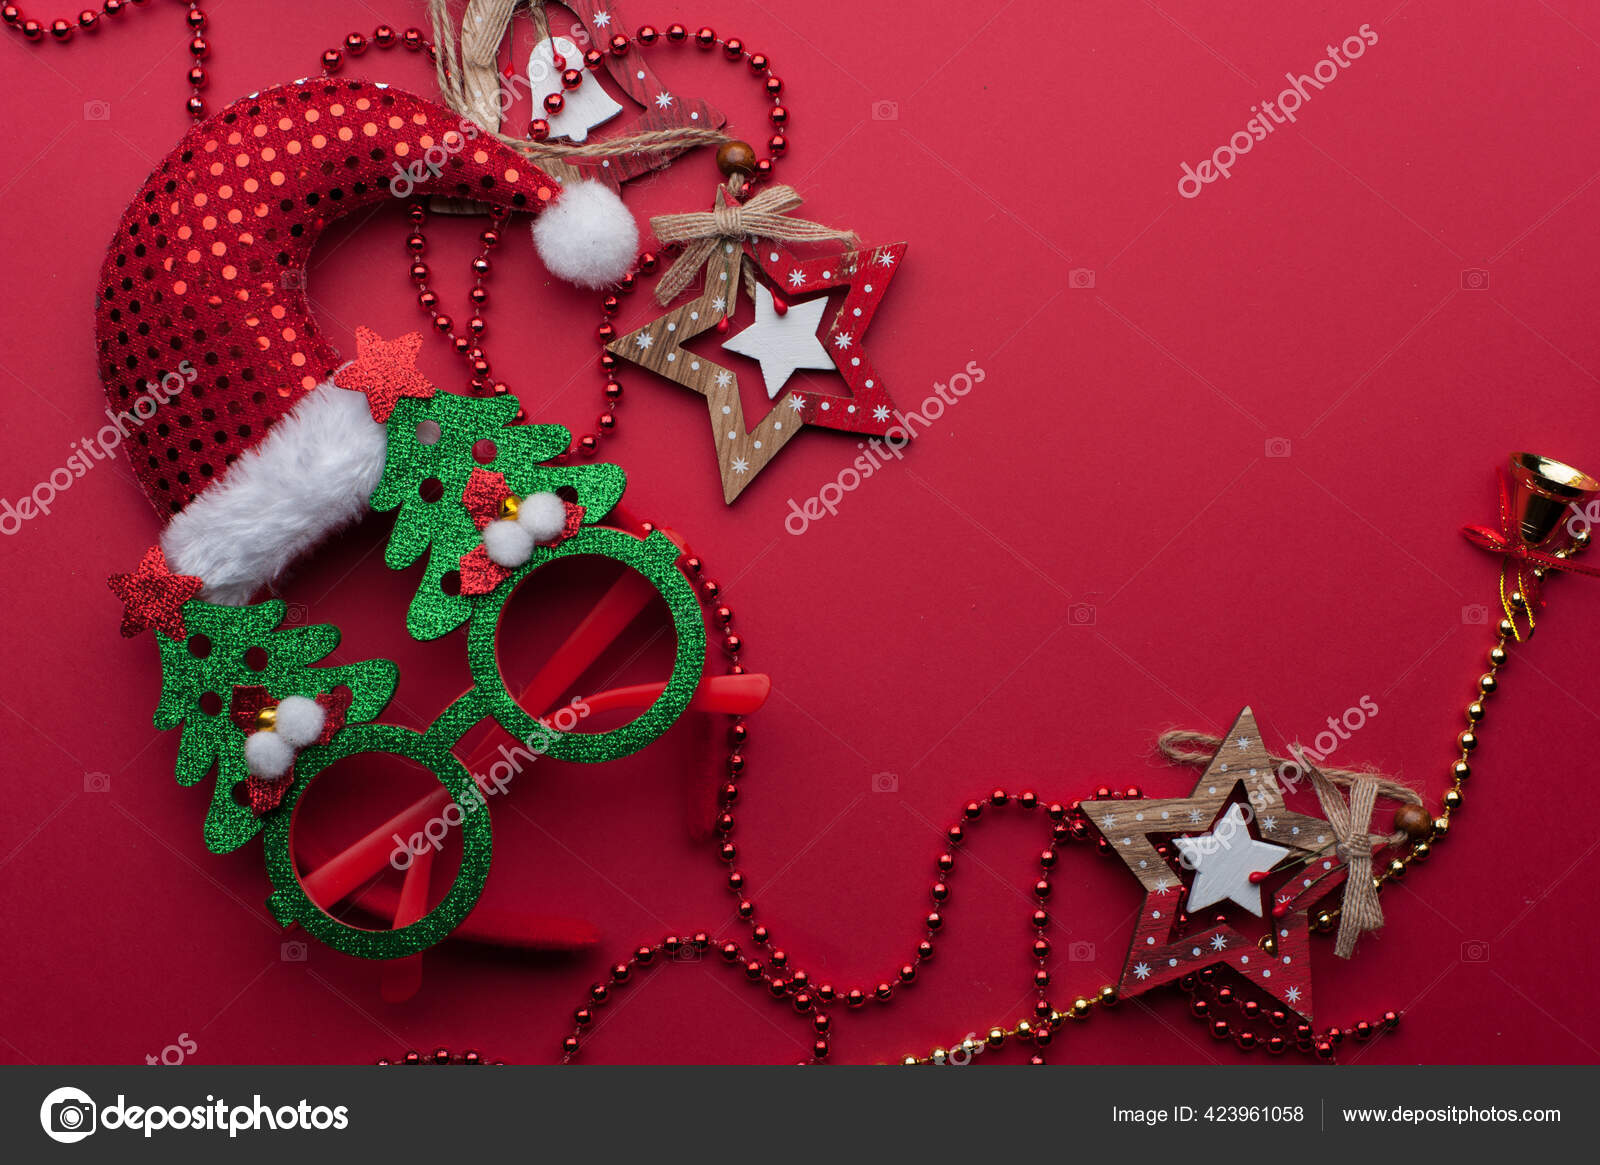 Weihnachten Stirnband Lustige Glaser Mit Grunen Baumen Und Spielzeug Auf Rotem Hintergrund Stockfotografie Lizenzfreie Fotos C By Shishkin Depositphotos